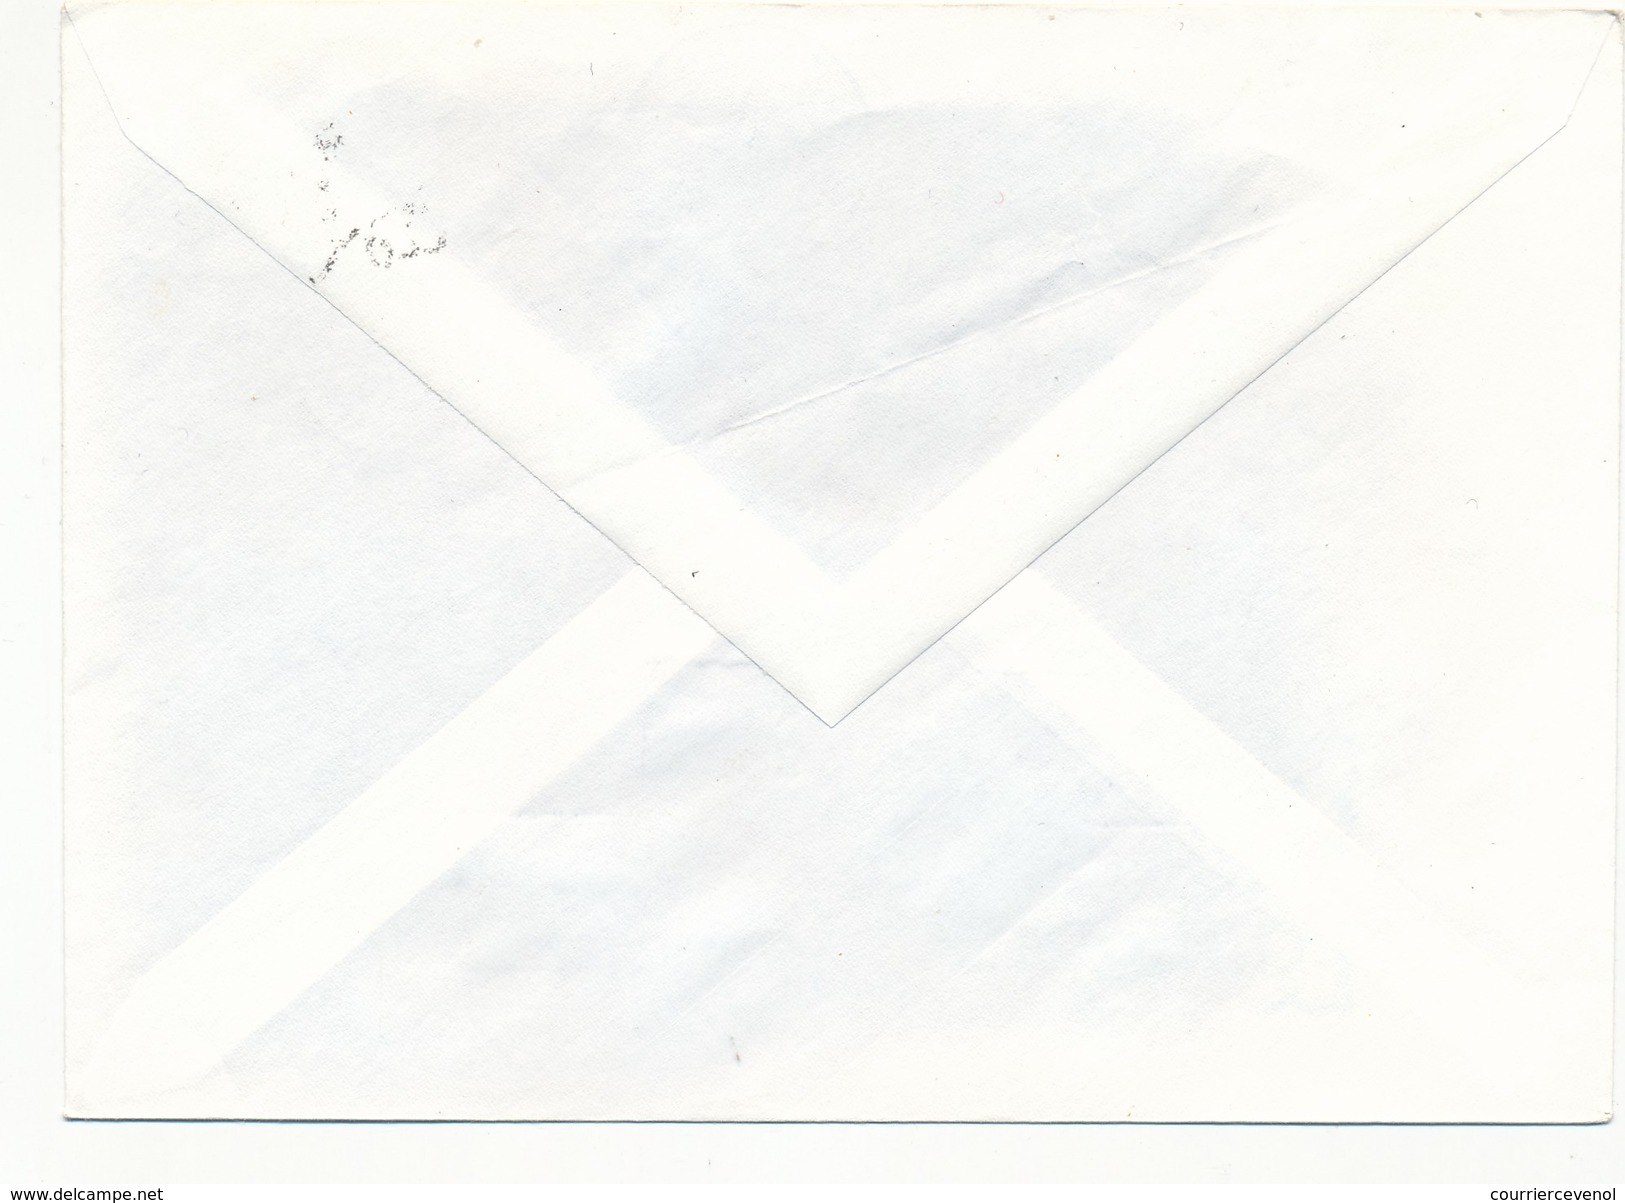 FINLANDE - 2 Enveloppes Commémoratives - Mesure De L'Arc Méridien En Laponie -1986 - Storia Postale